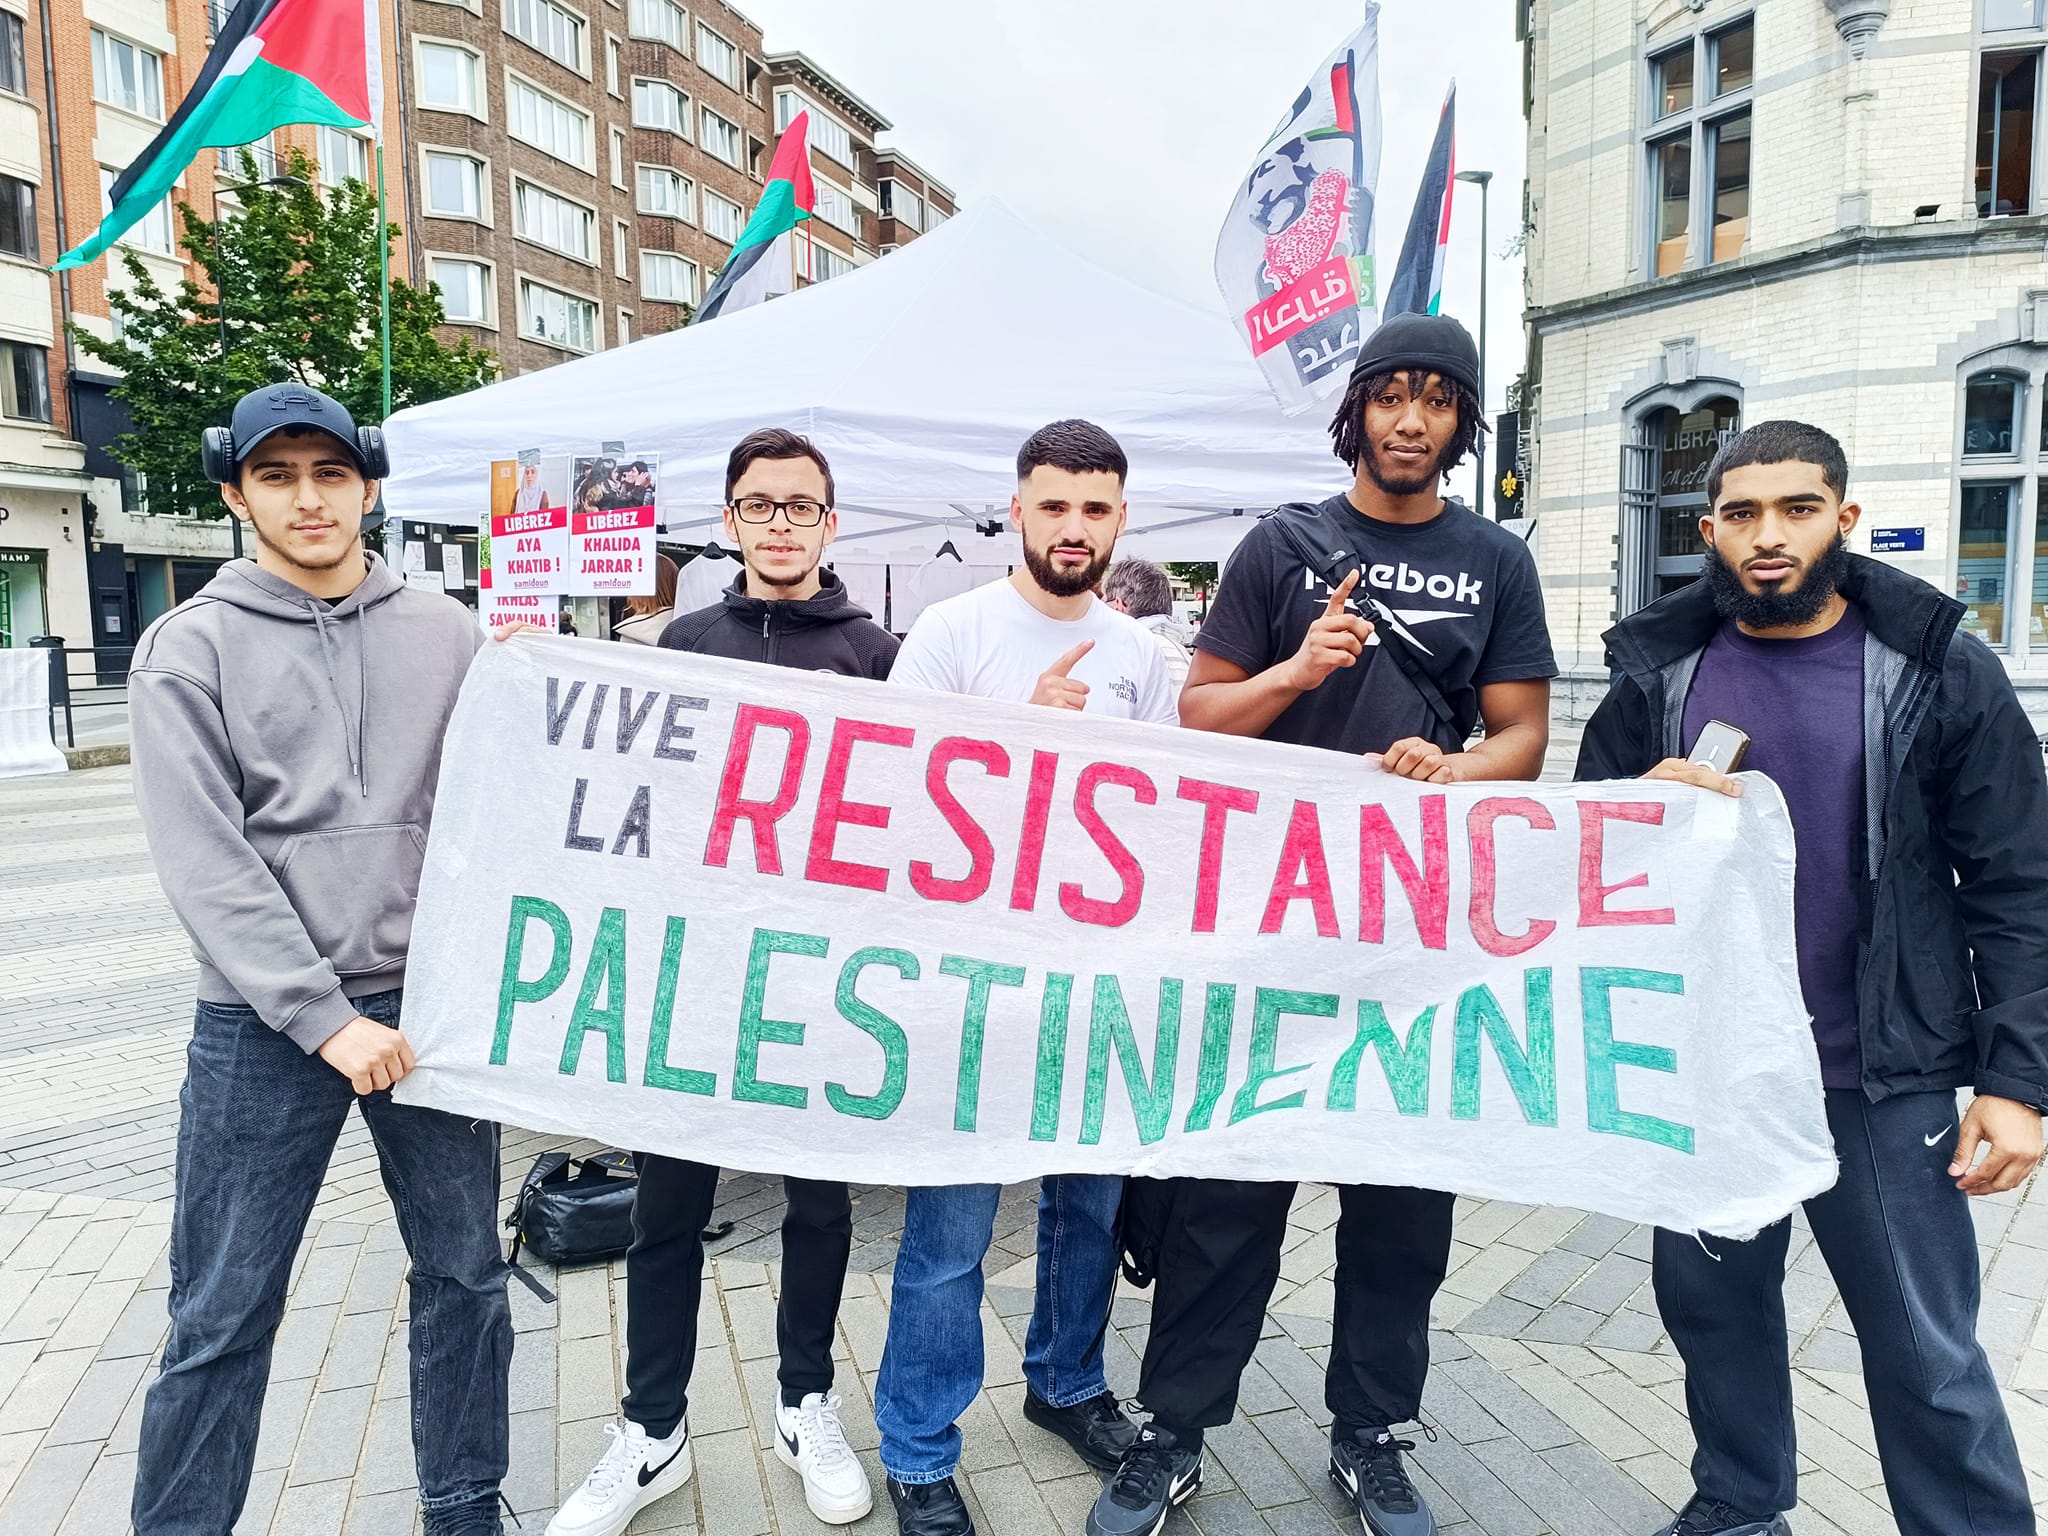 15 mai, jour de la Nakba : soutien à la résistance palestinienne